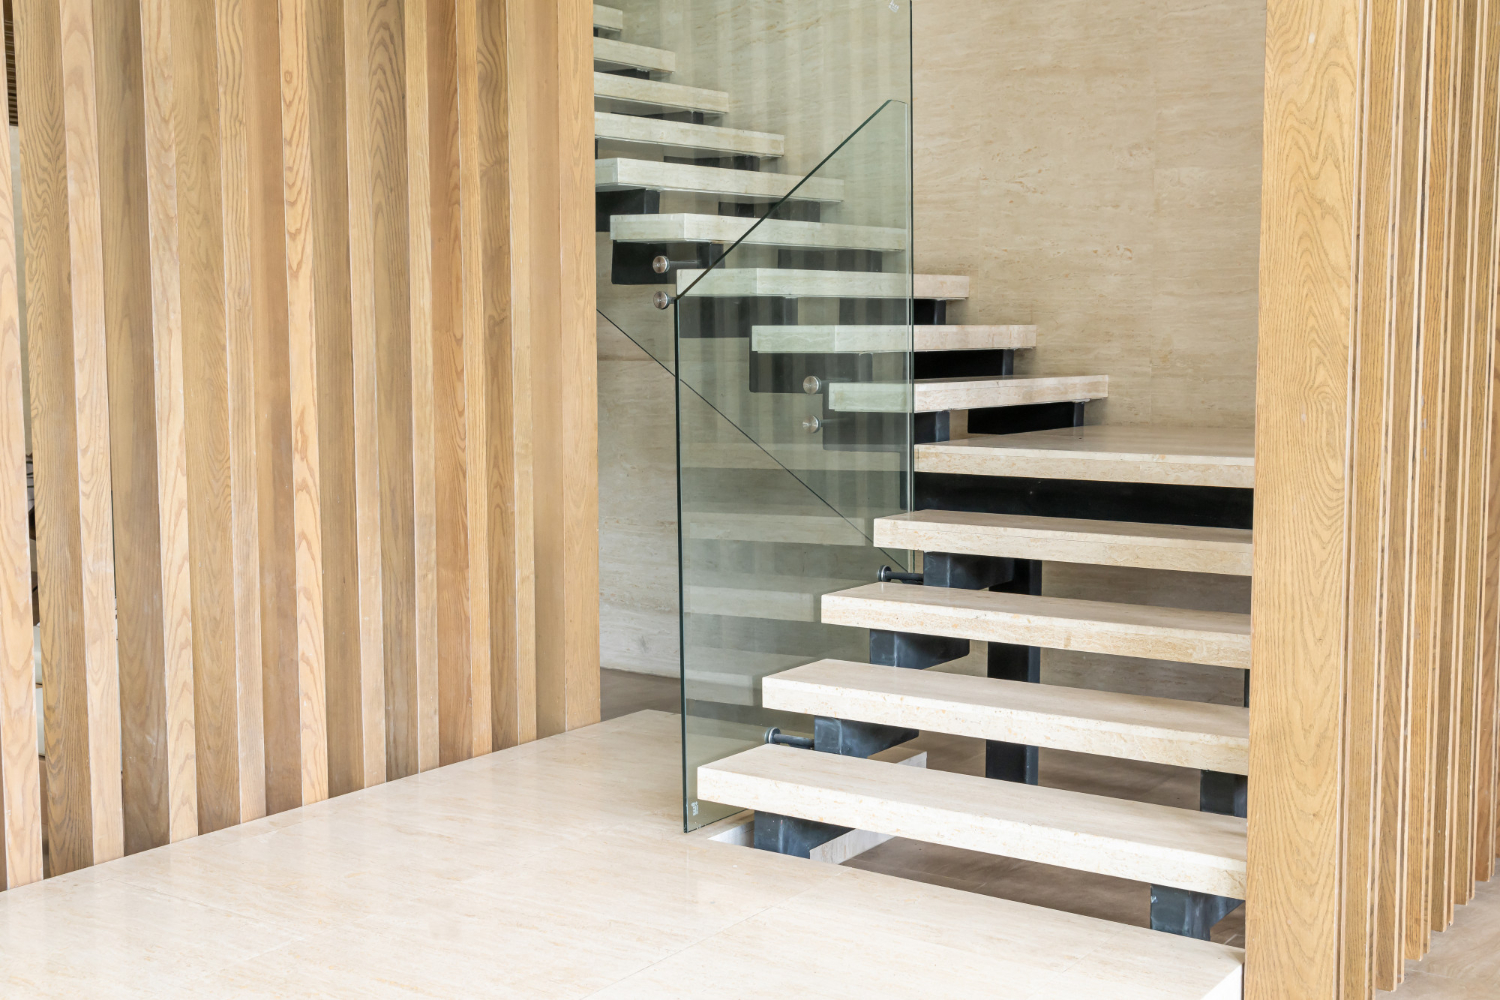 Pertimbangkan material sebelum memadukan dengan bahan baku tangga agar menghasilkan kesan elegan yang lebih maksimal.